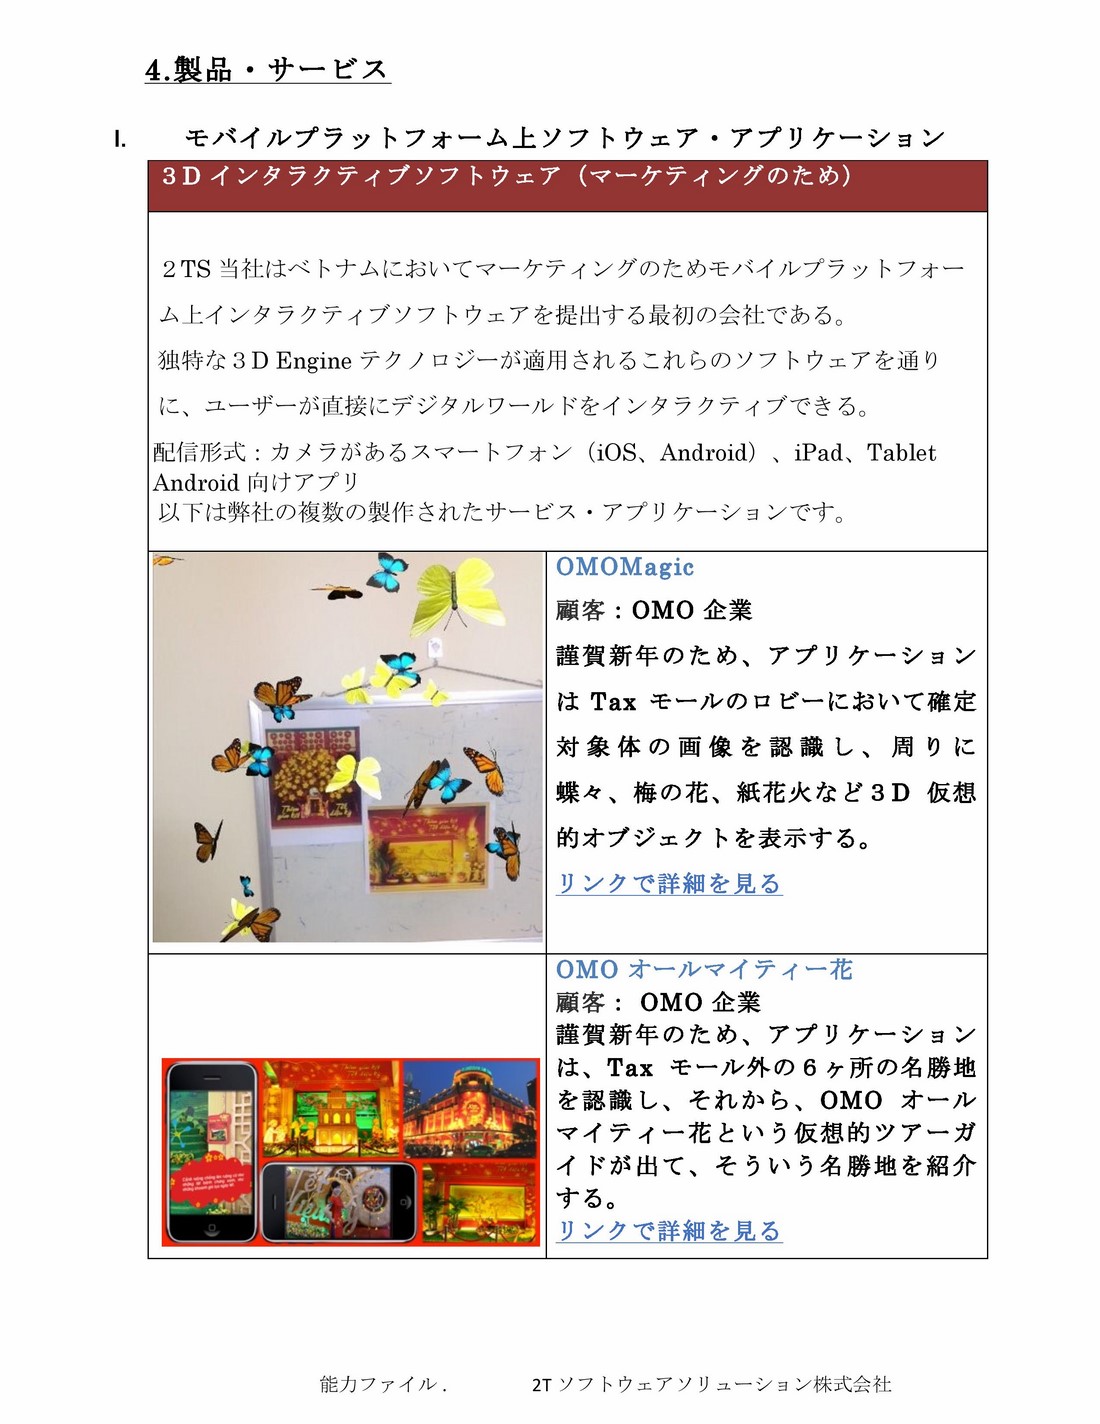 2TS Profile_jap_2015-10-21-page-014 (Copy)